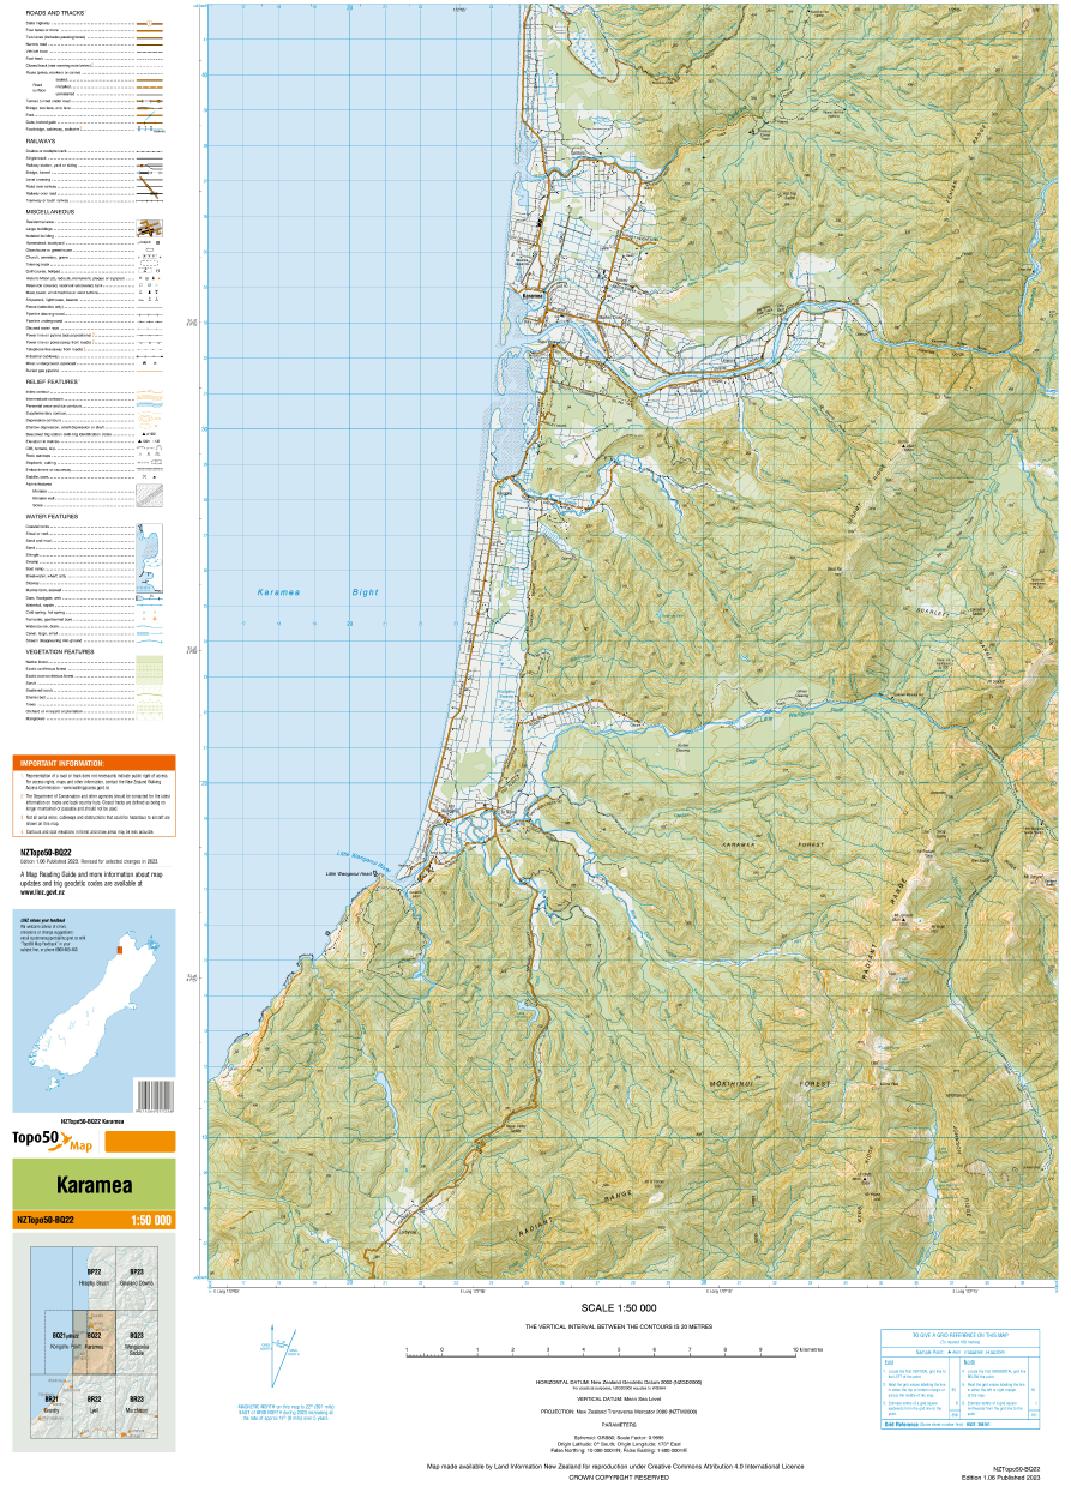 Topo map of Karamea